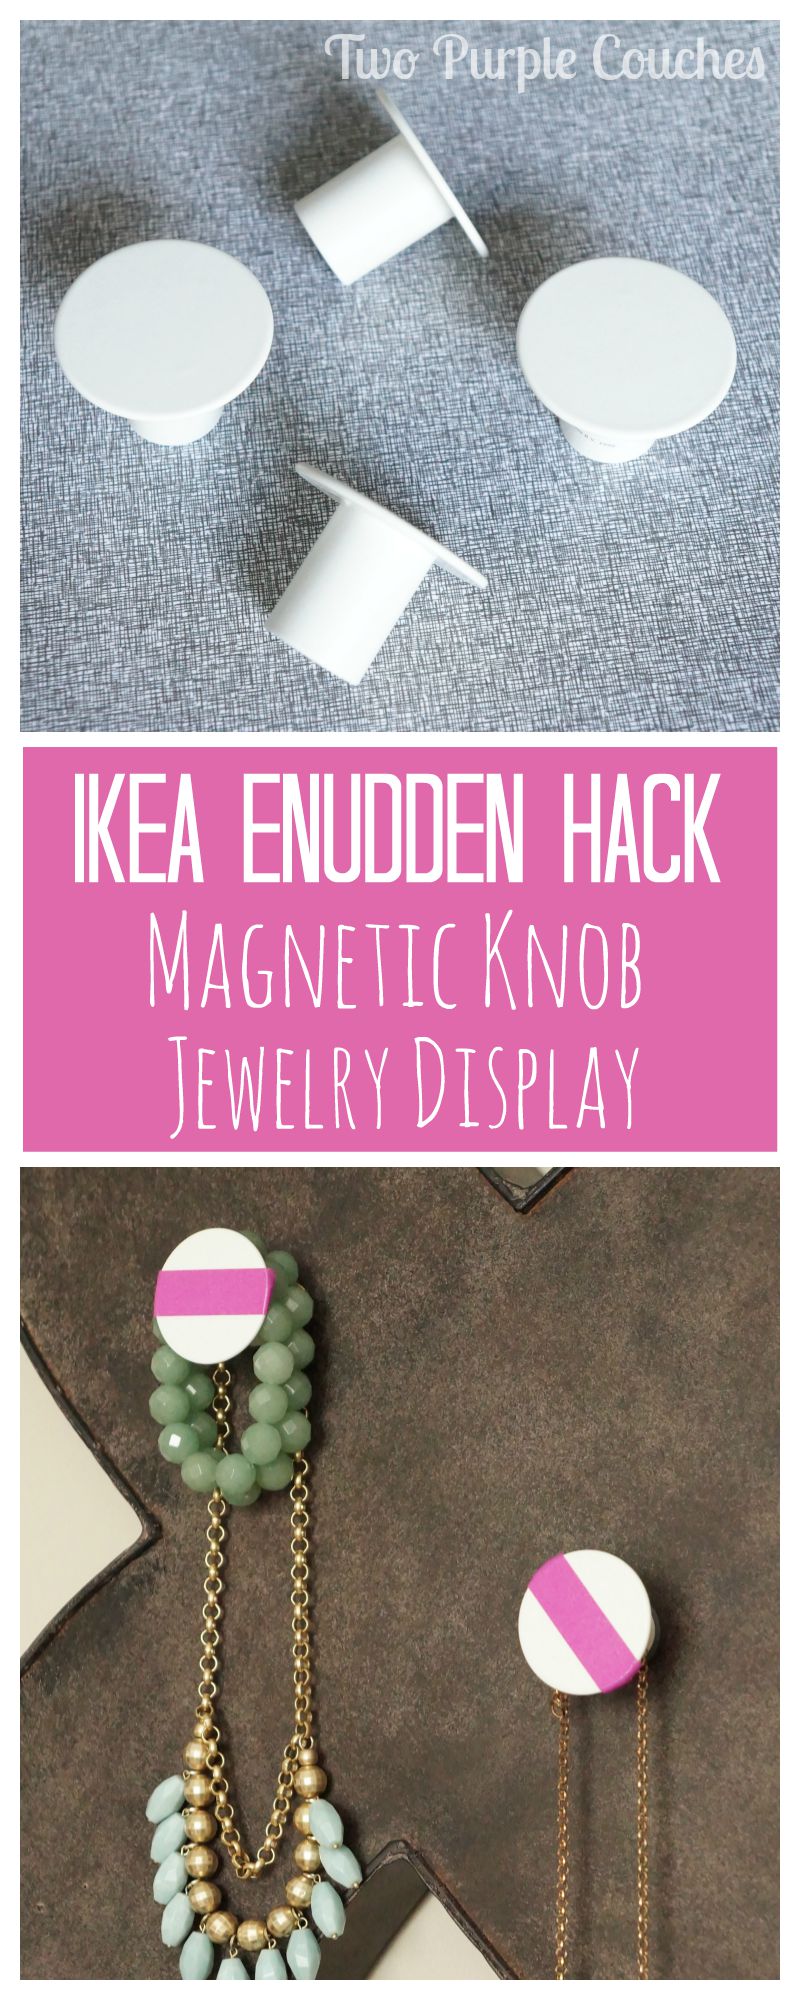 IKEA Enudden Magnetic Knob Jewelry Display via www.twopurplecouches.com